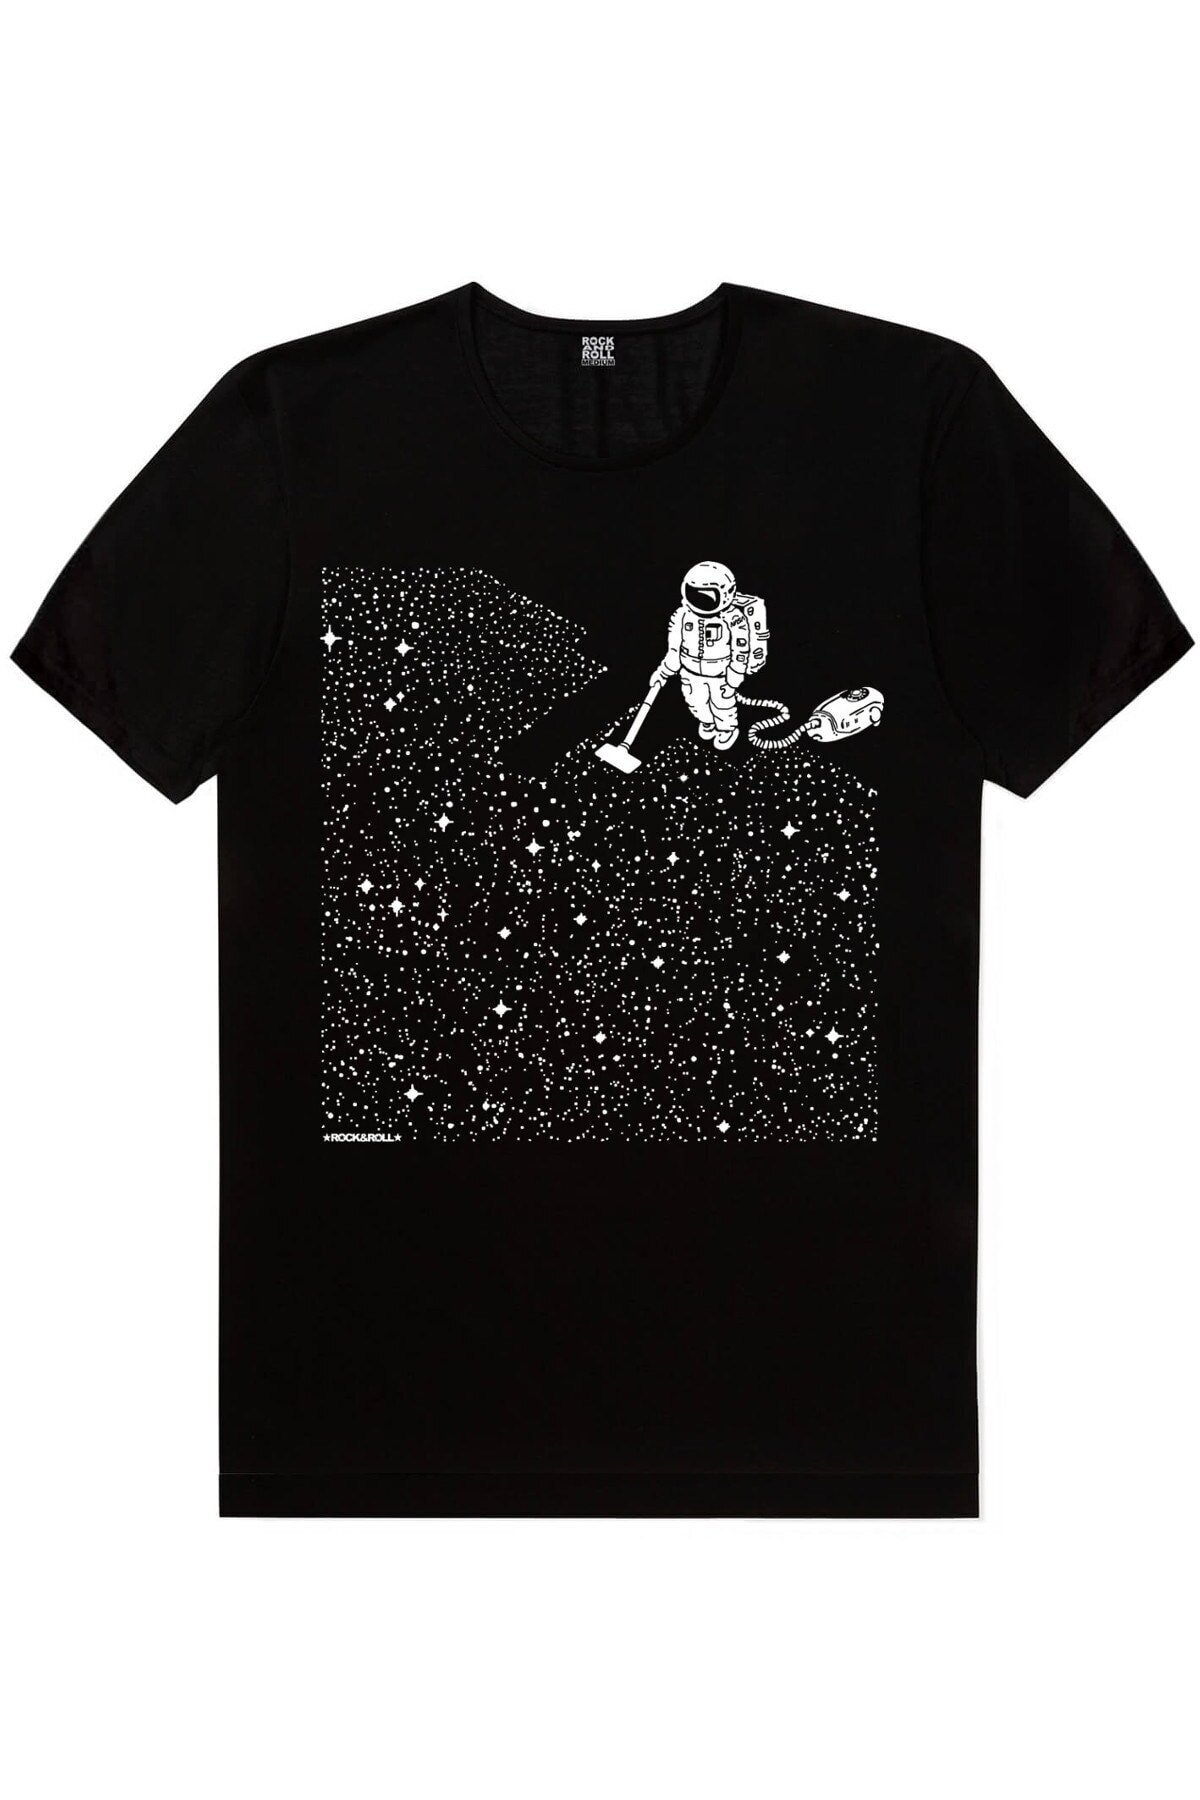 Balon Gezegeneler, Süpürgeli Astronot, Grafitici Astronot Kadın 3'lü Eko Paket T-shirt